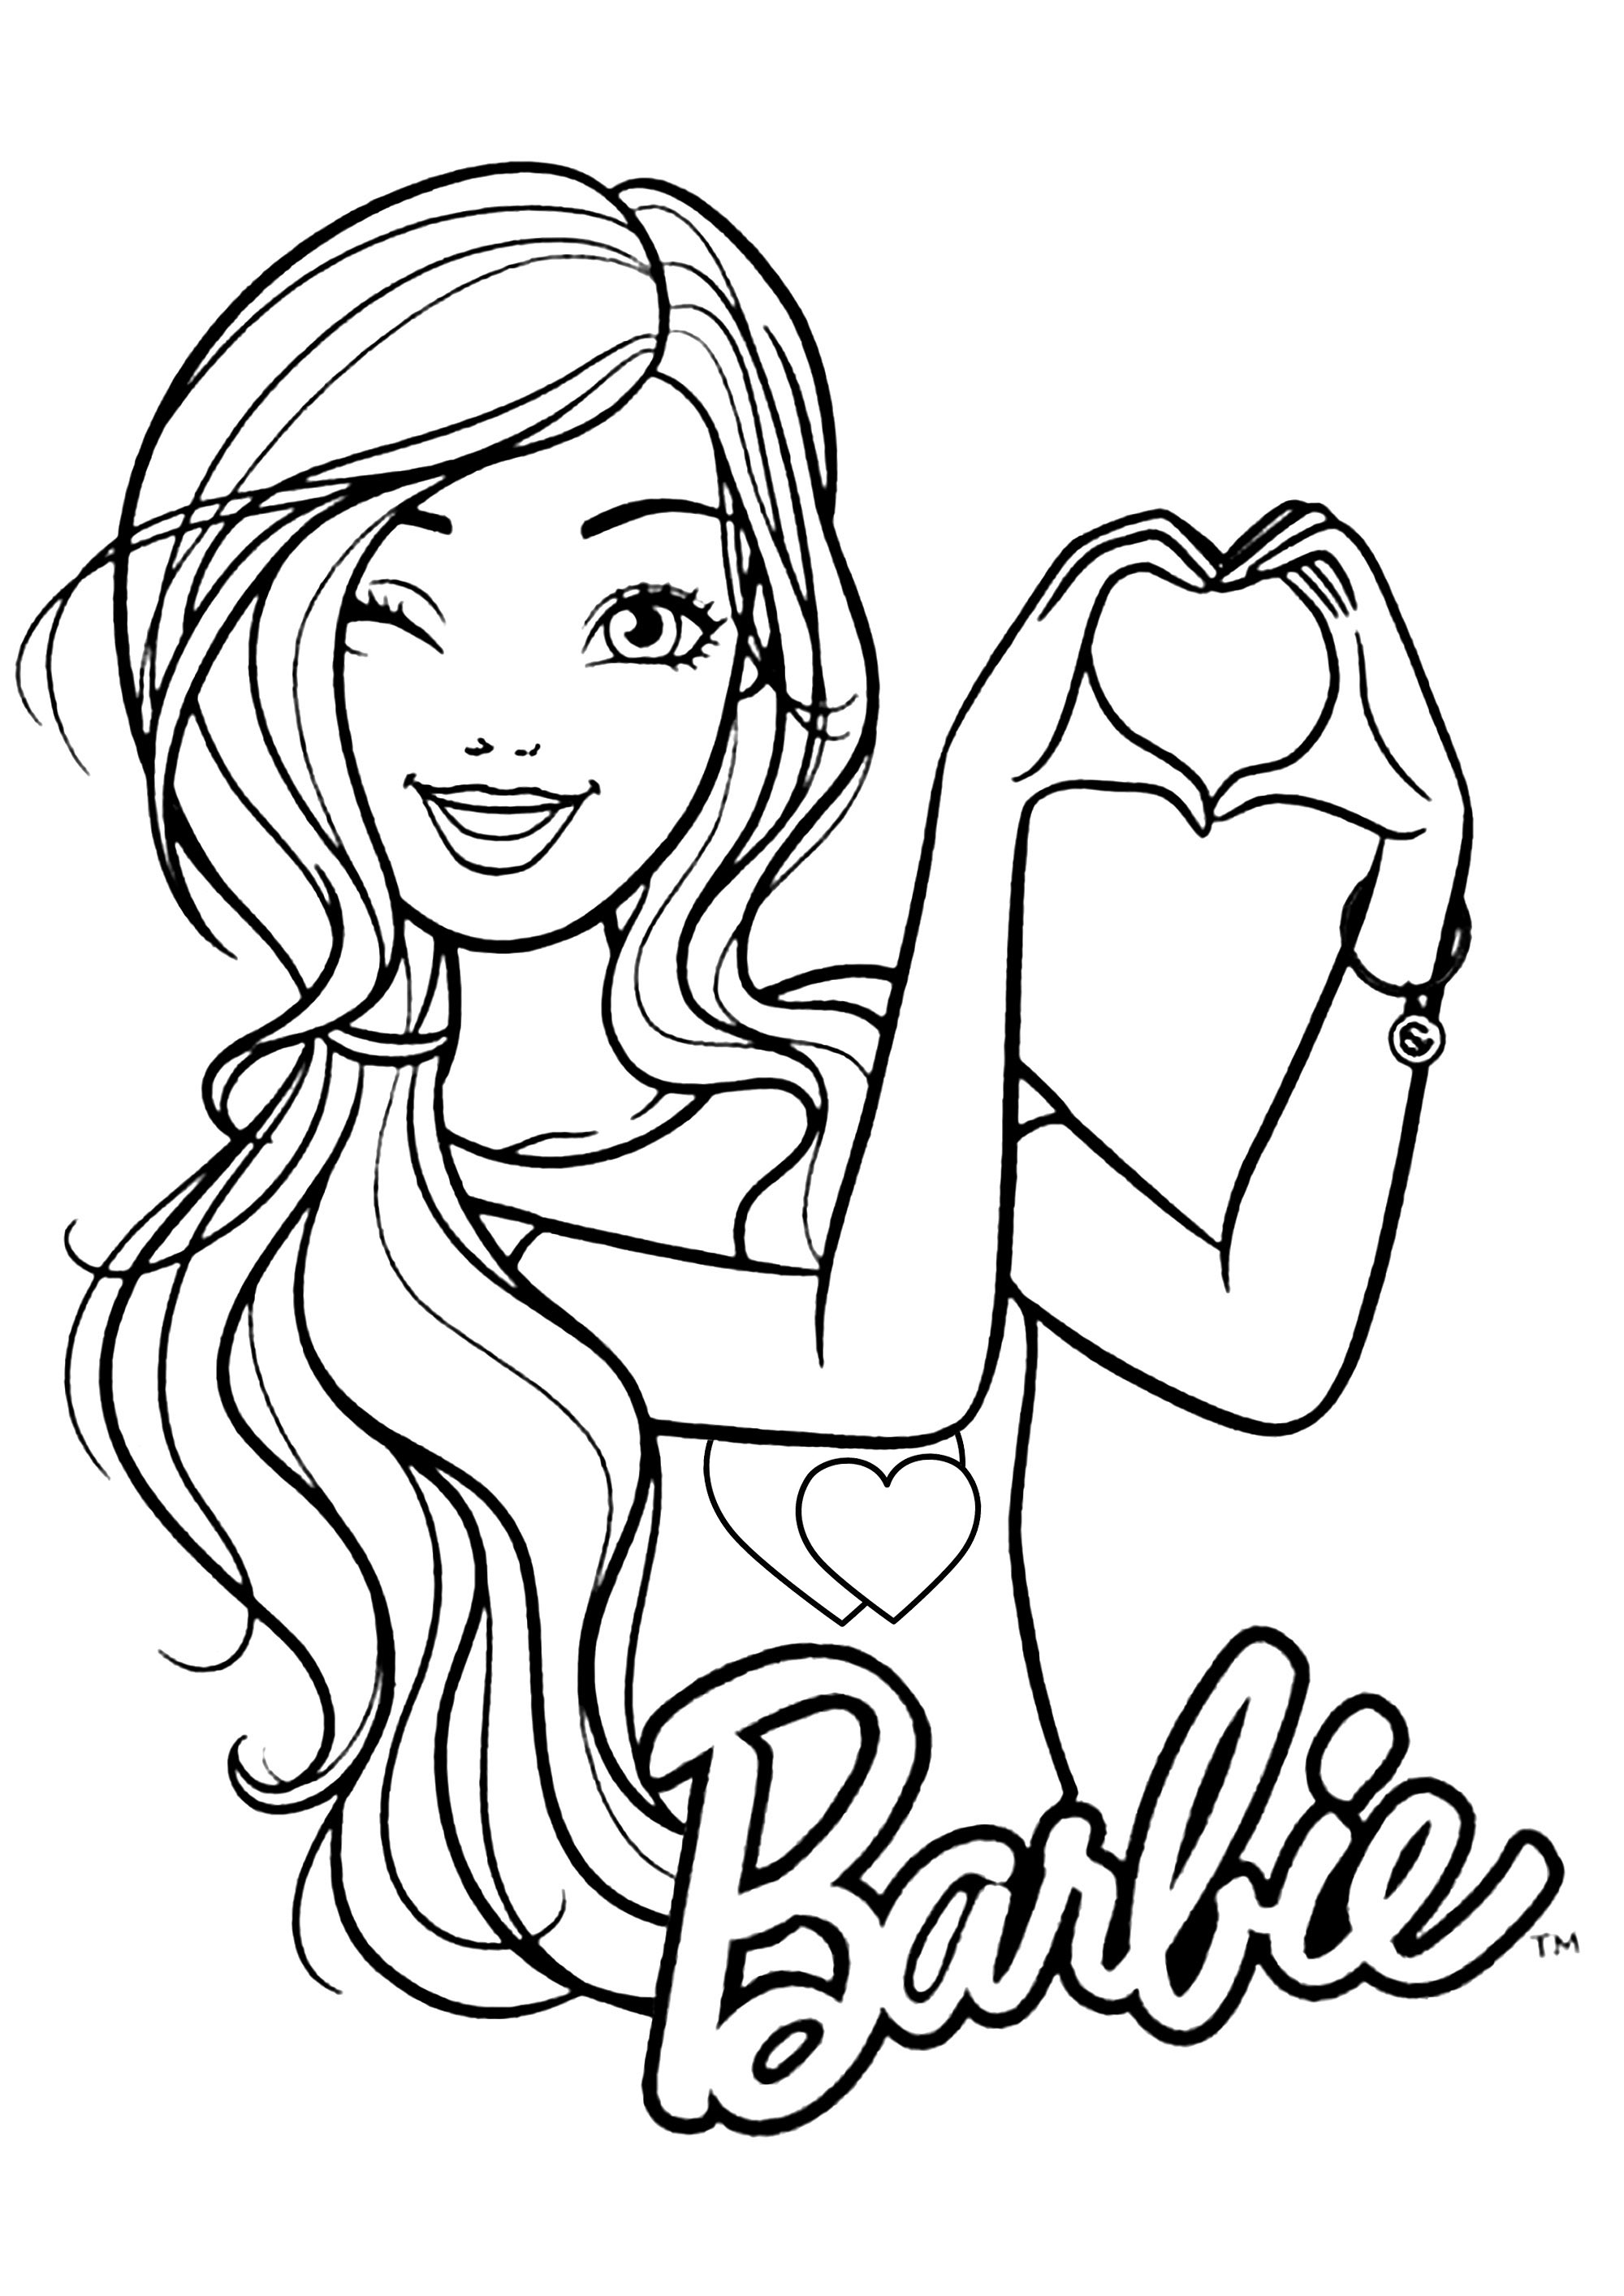 Barbie e gatinha para colorir - Imprimir Desenhos